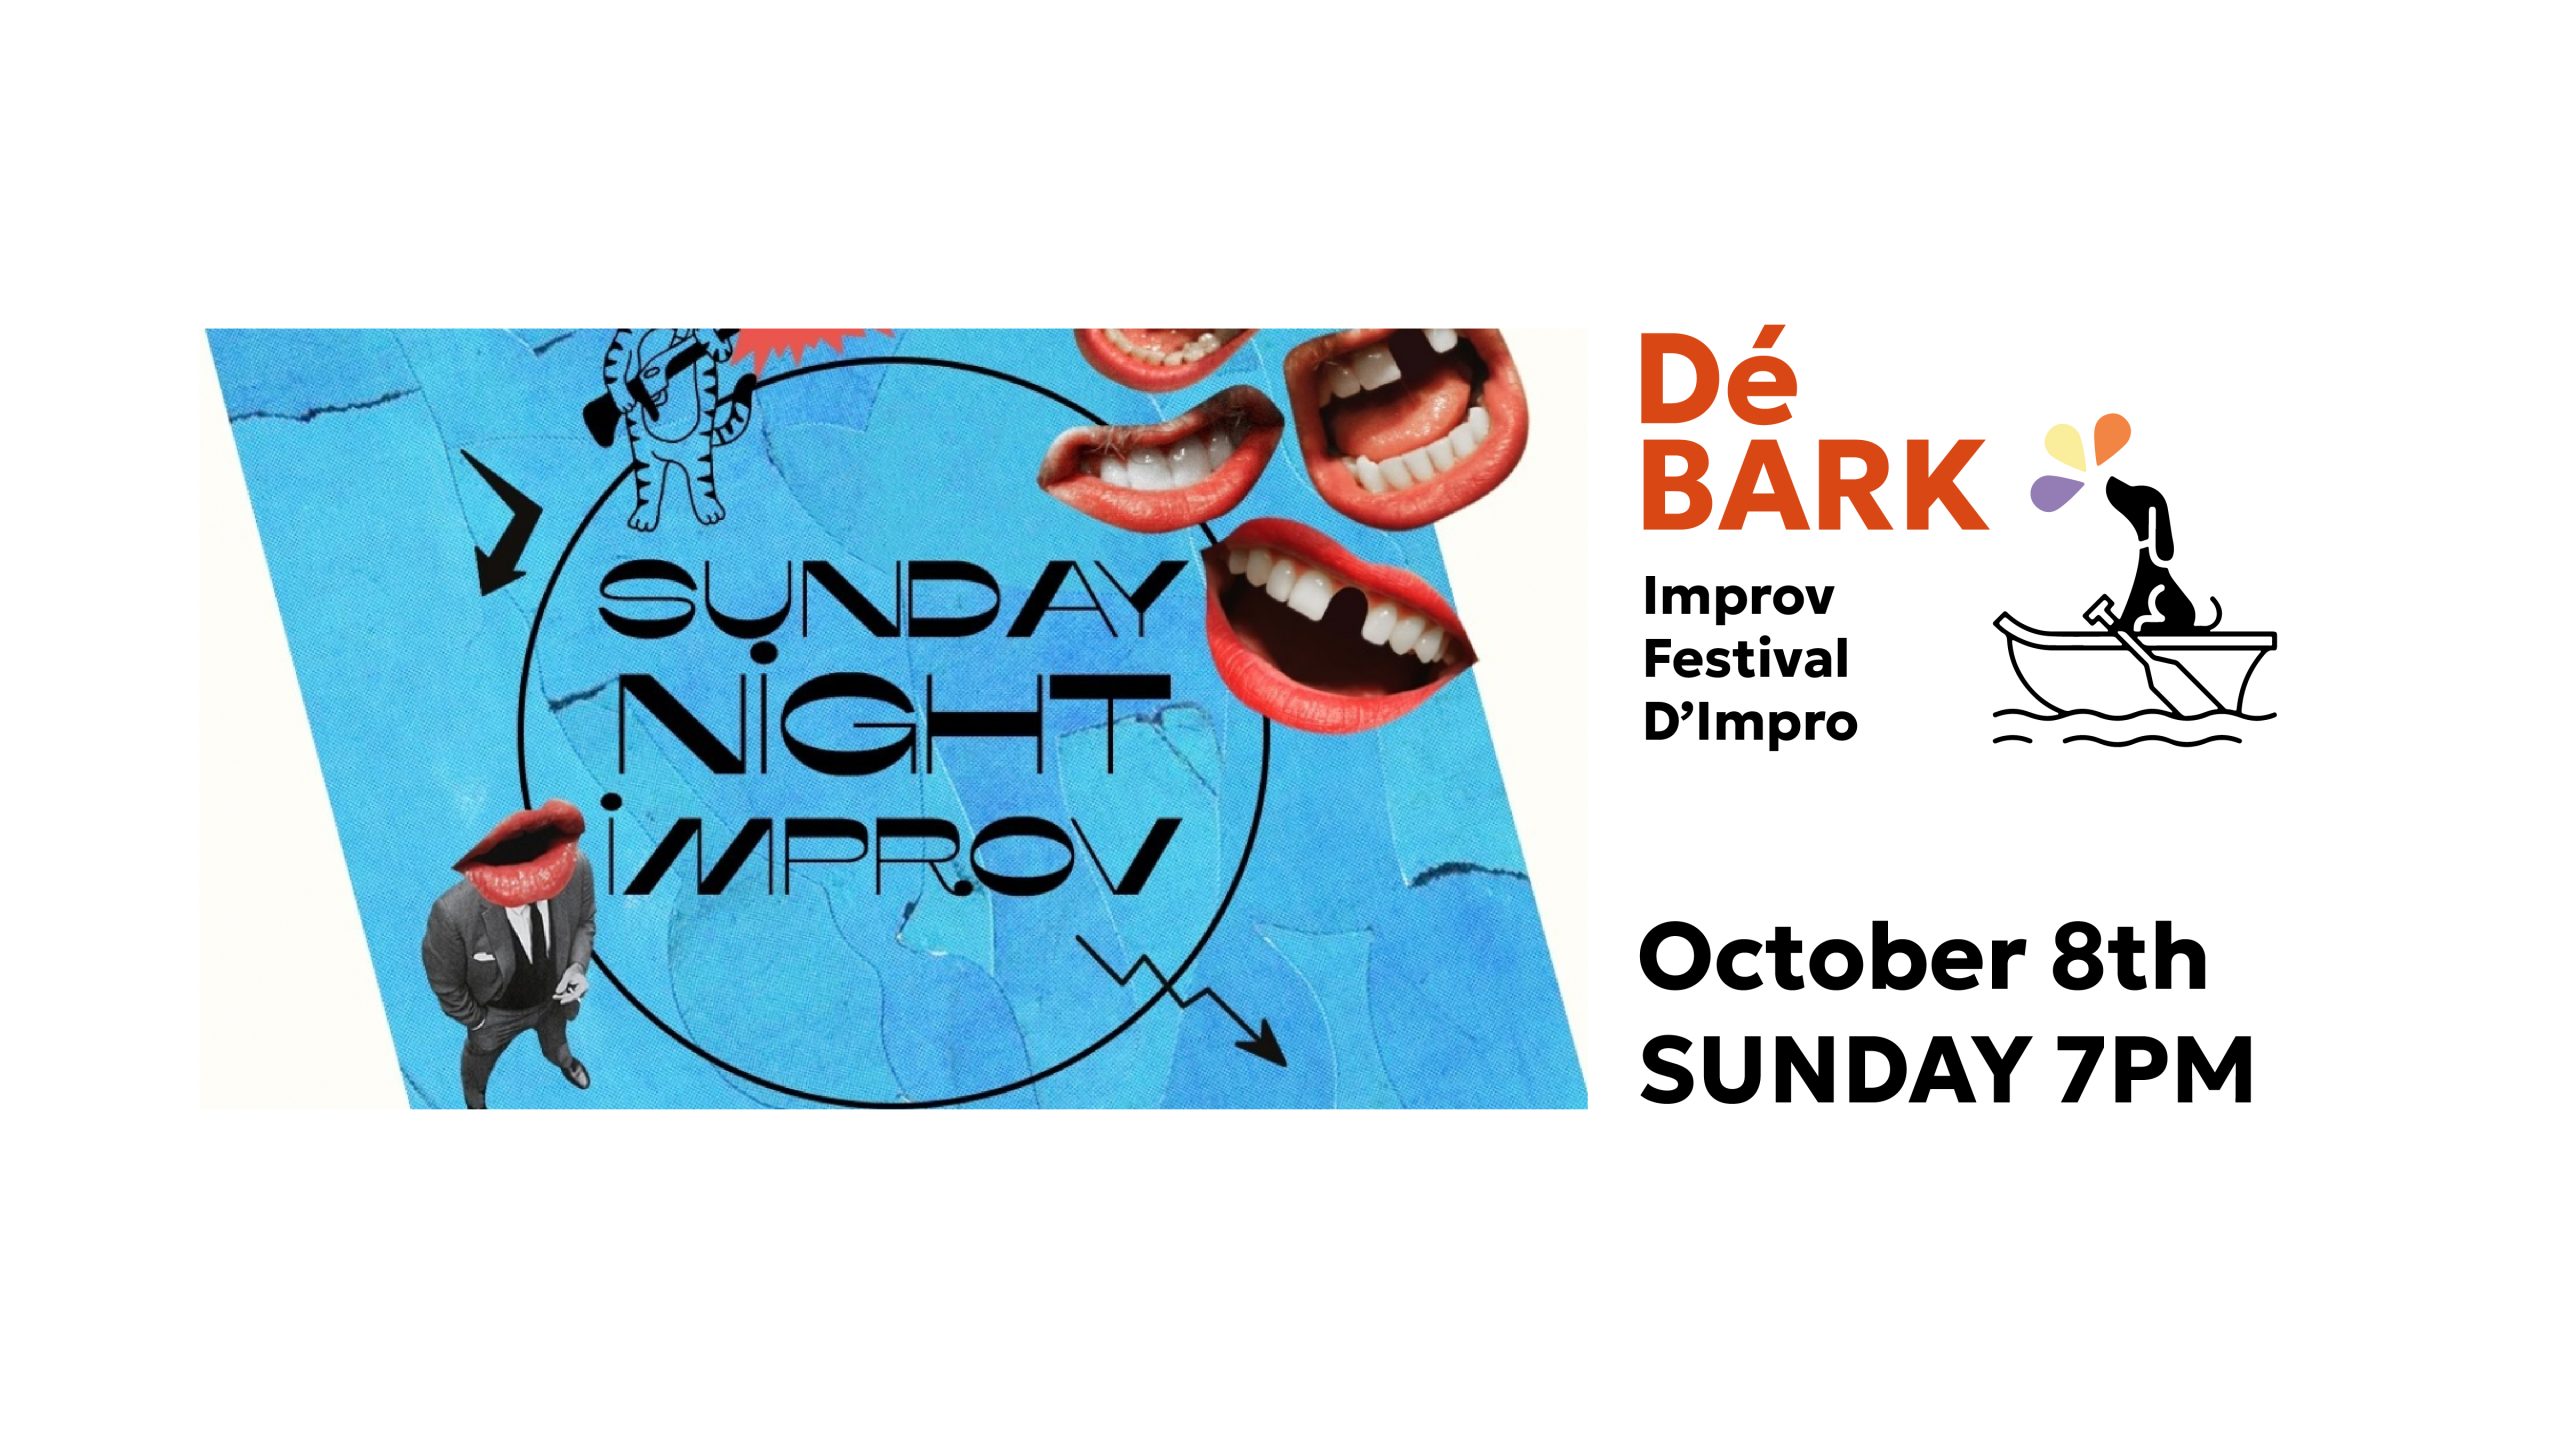 Poster for Sunday Night Improv, DéBARK Festival